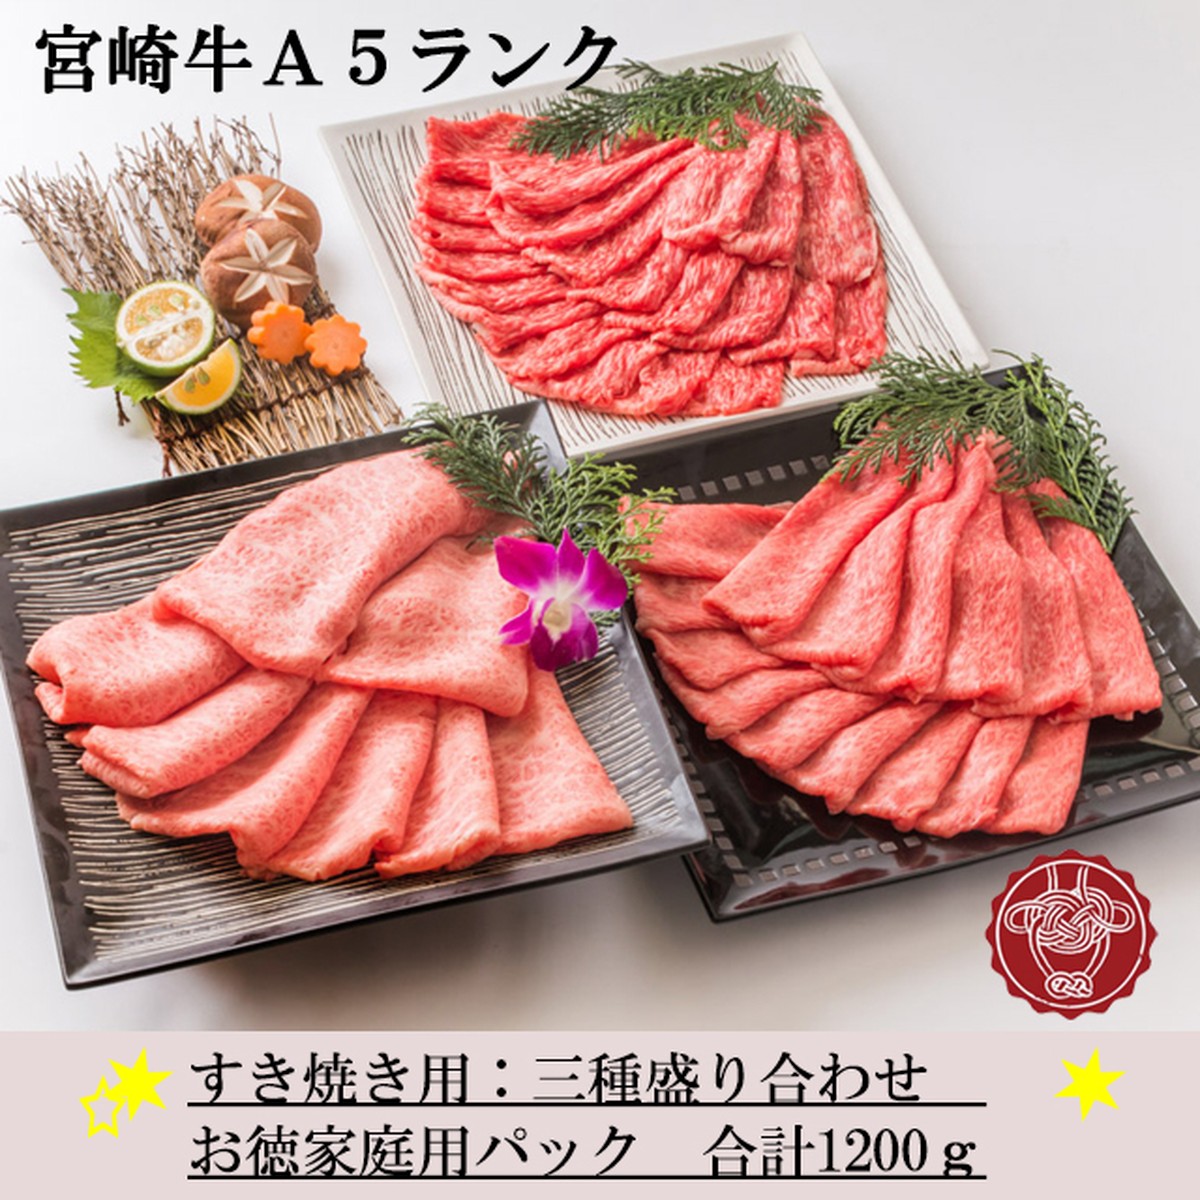 すき焼き用3種盛り お徳用パック 宮崎牛ａ５ランク 美味しい九州の肉 霜降り処和翔